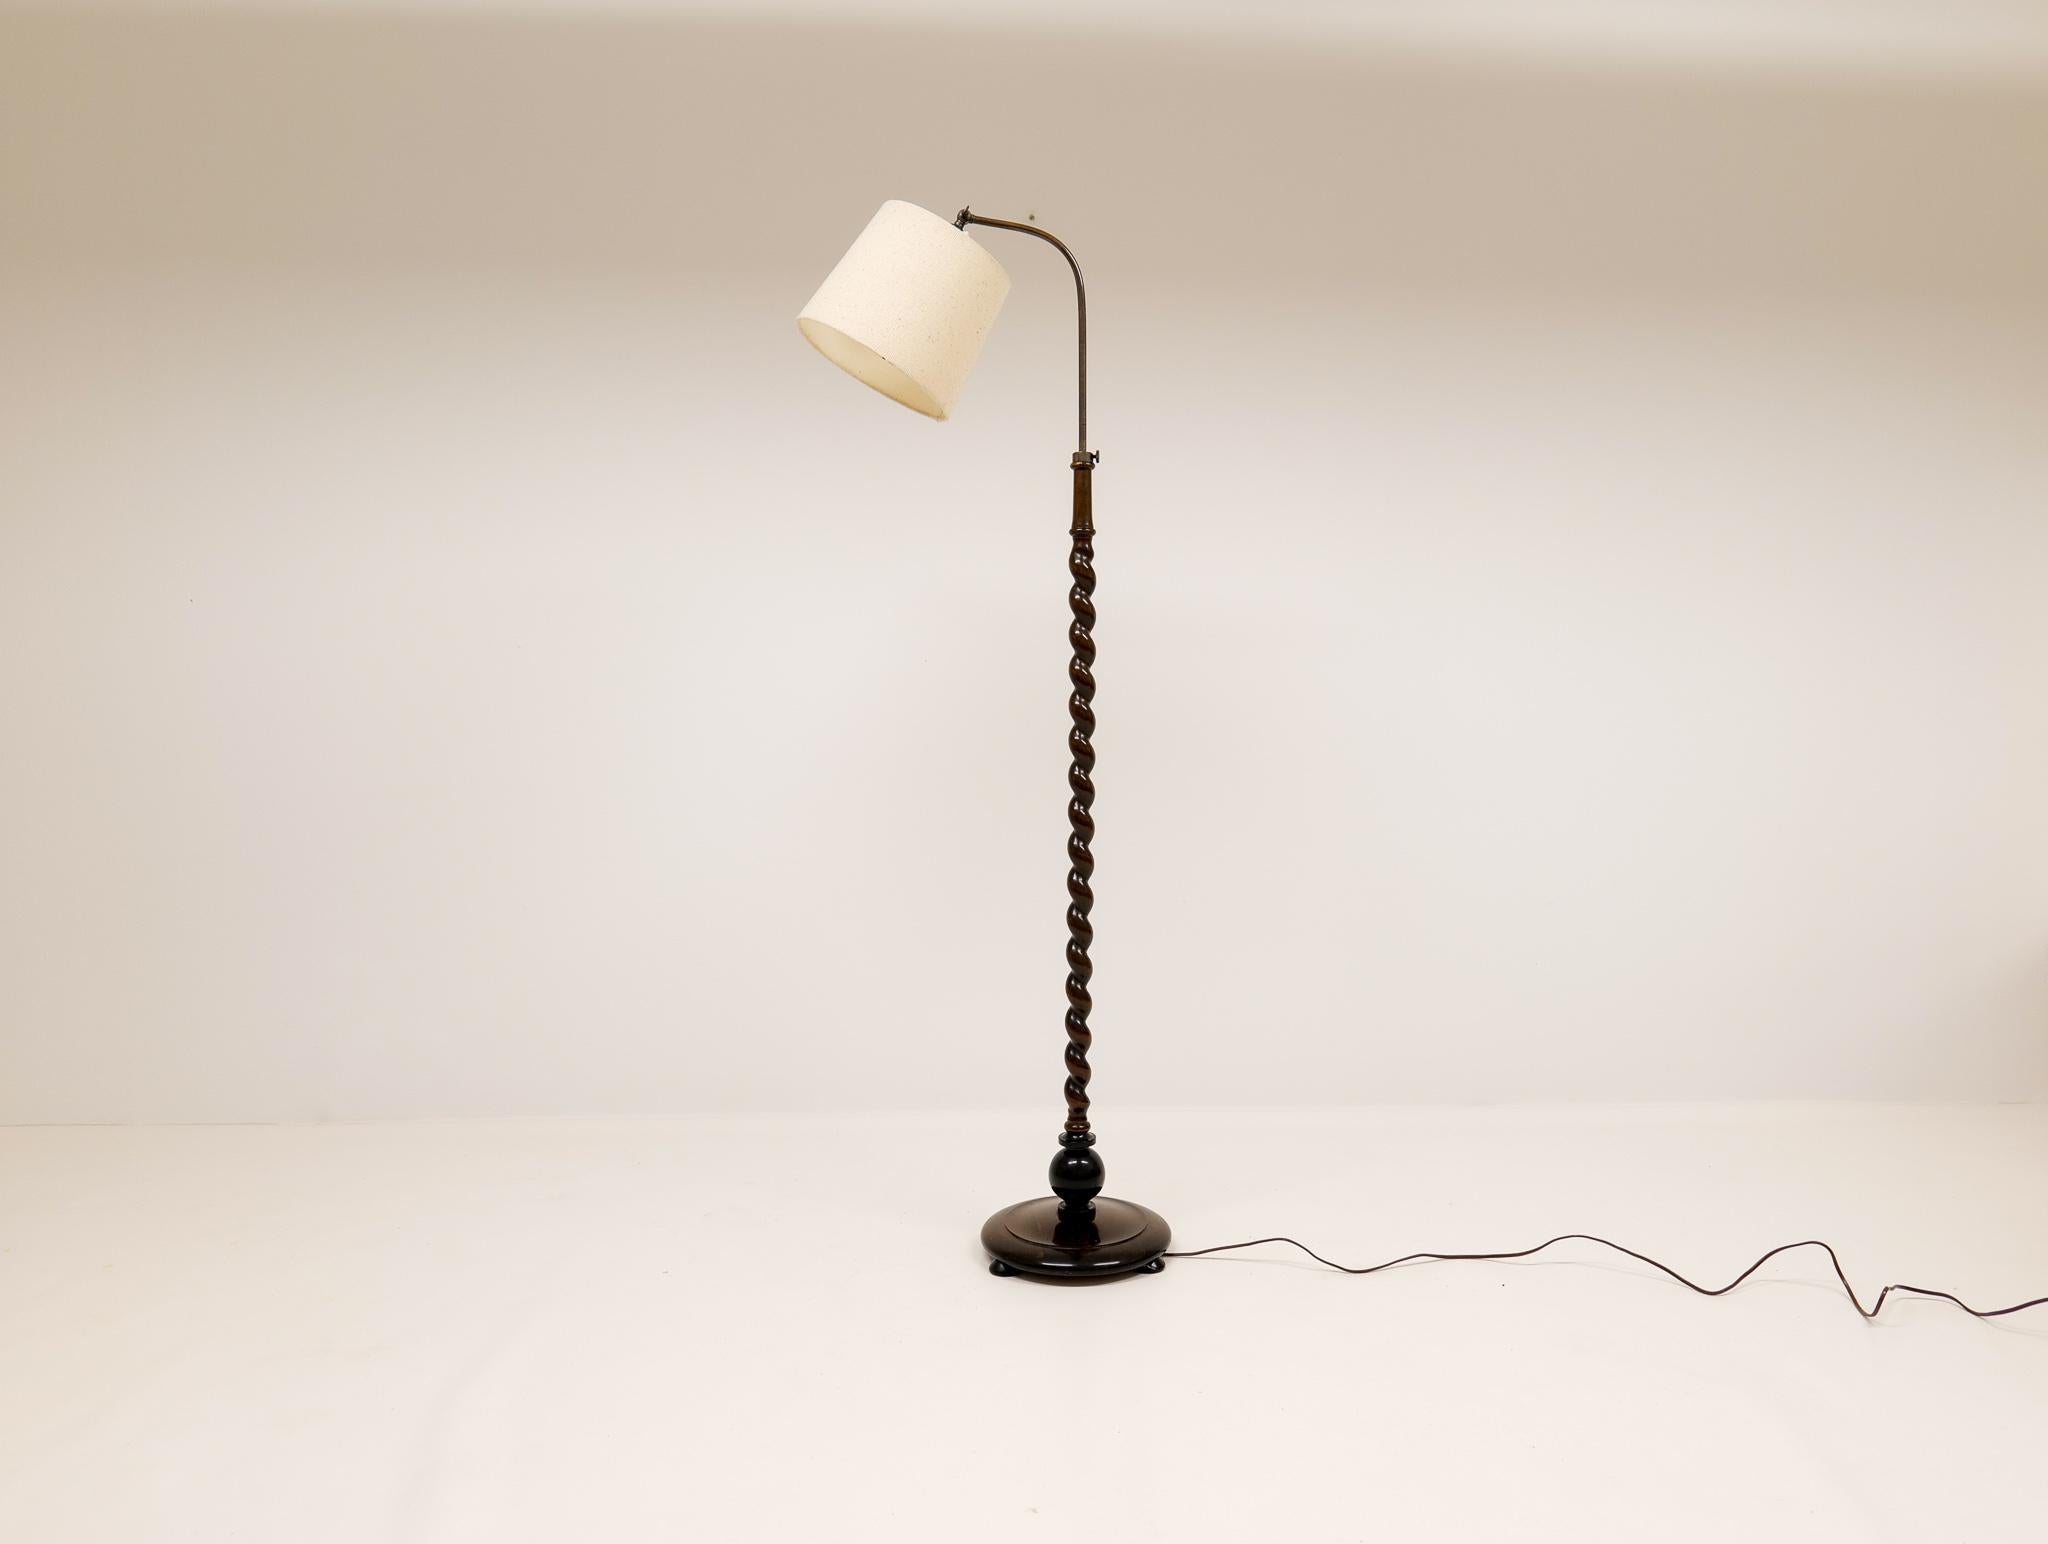 Schön aussehende organische Stehlampe mit einem Sockel und der Stange aus gebeizter Birke. Die Lampe kann in der Länge verstellt werden und ist durch das abgerundete Metall, das oben auf der Lampe angebracht ist, leicht zu handhaben. 

Guter